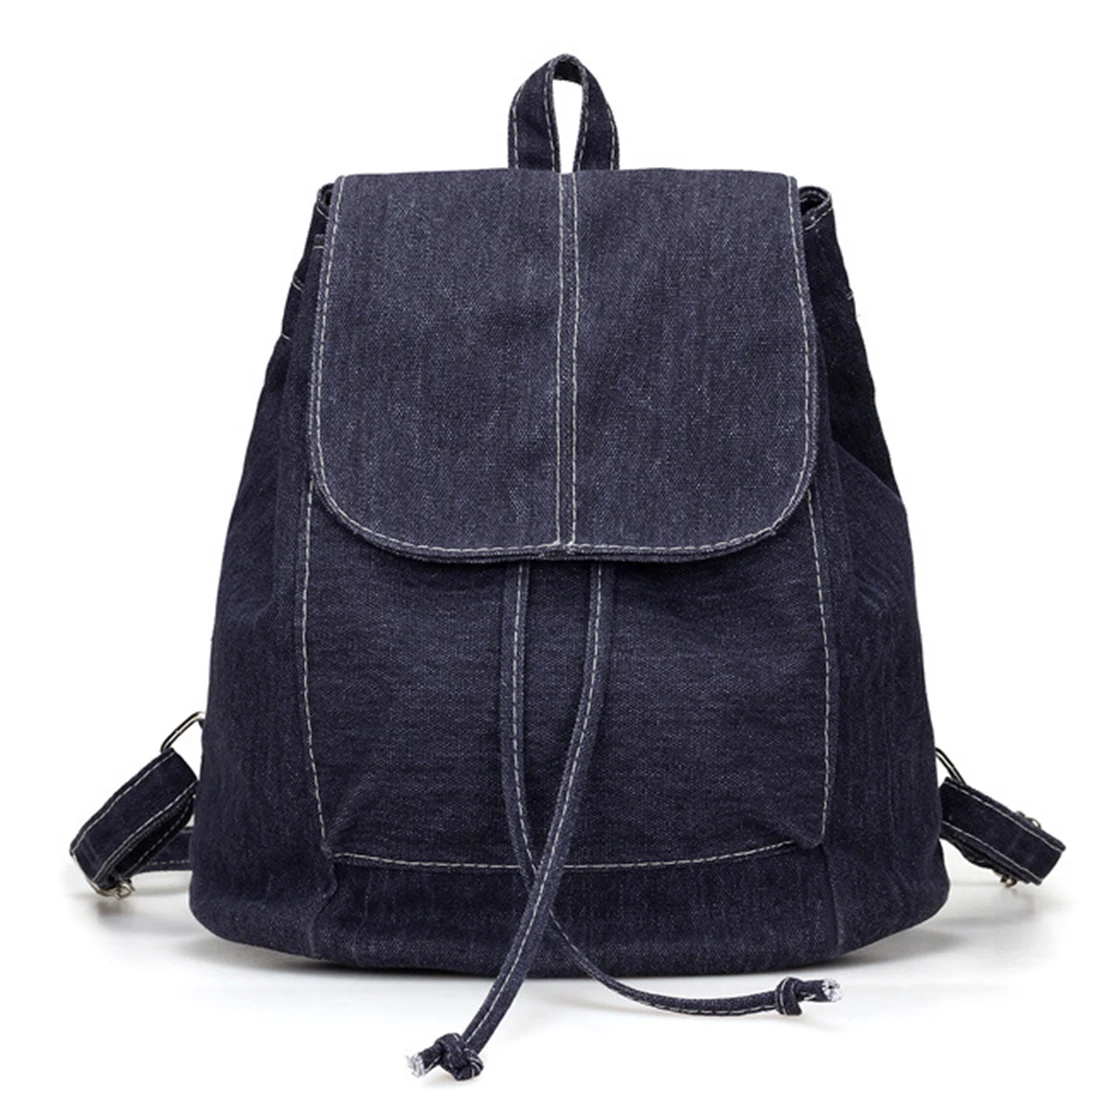 LJL холщовый женский рюкзак на шнурке школьные сумки для подростков девочек маленький рюкзак женский рюкзак - Цвет: Navy blue